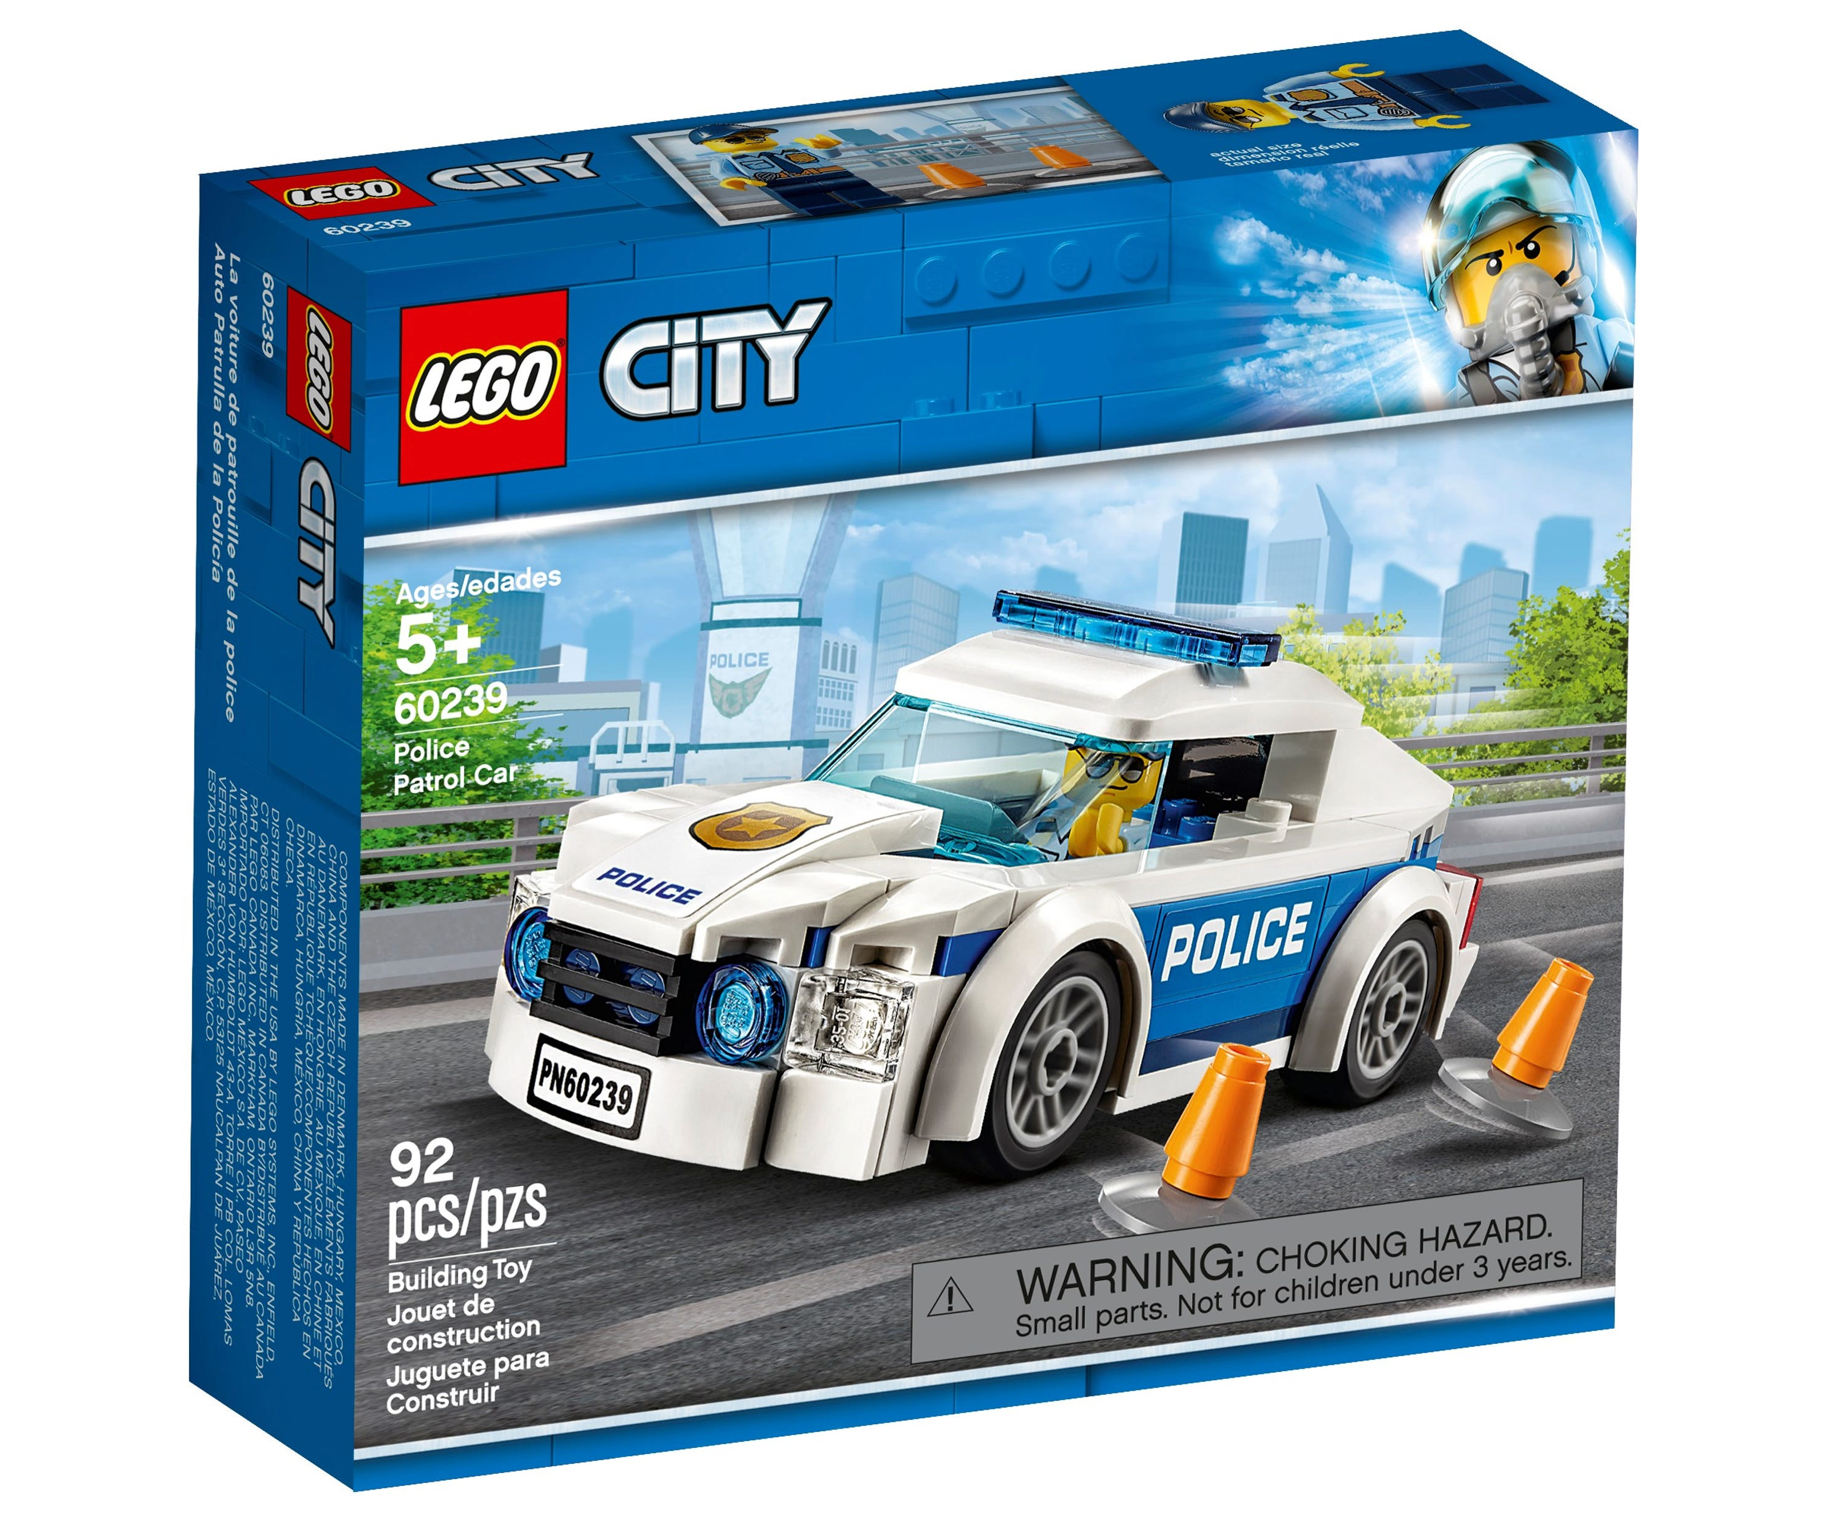 LEGO: City - Police Patrol Car